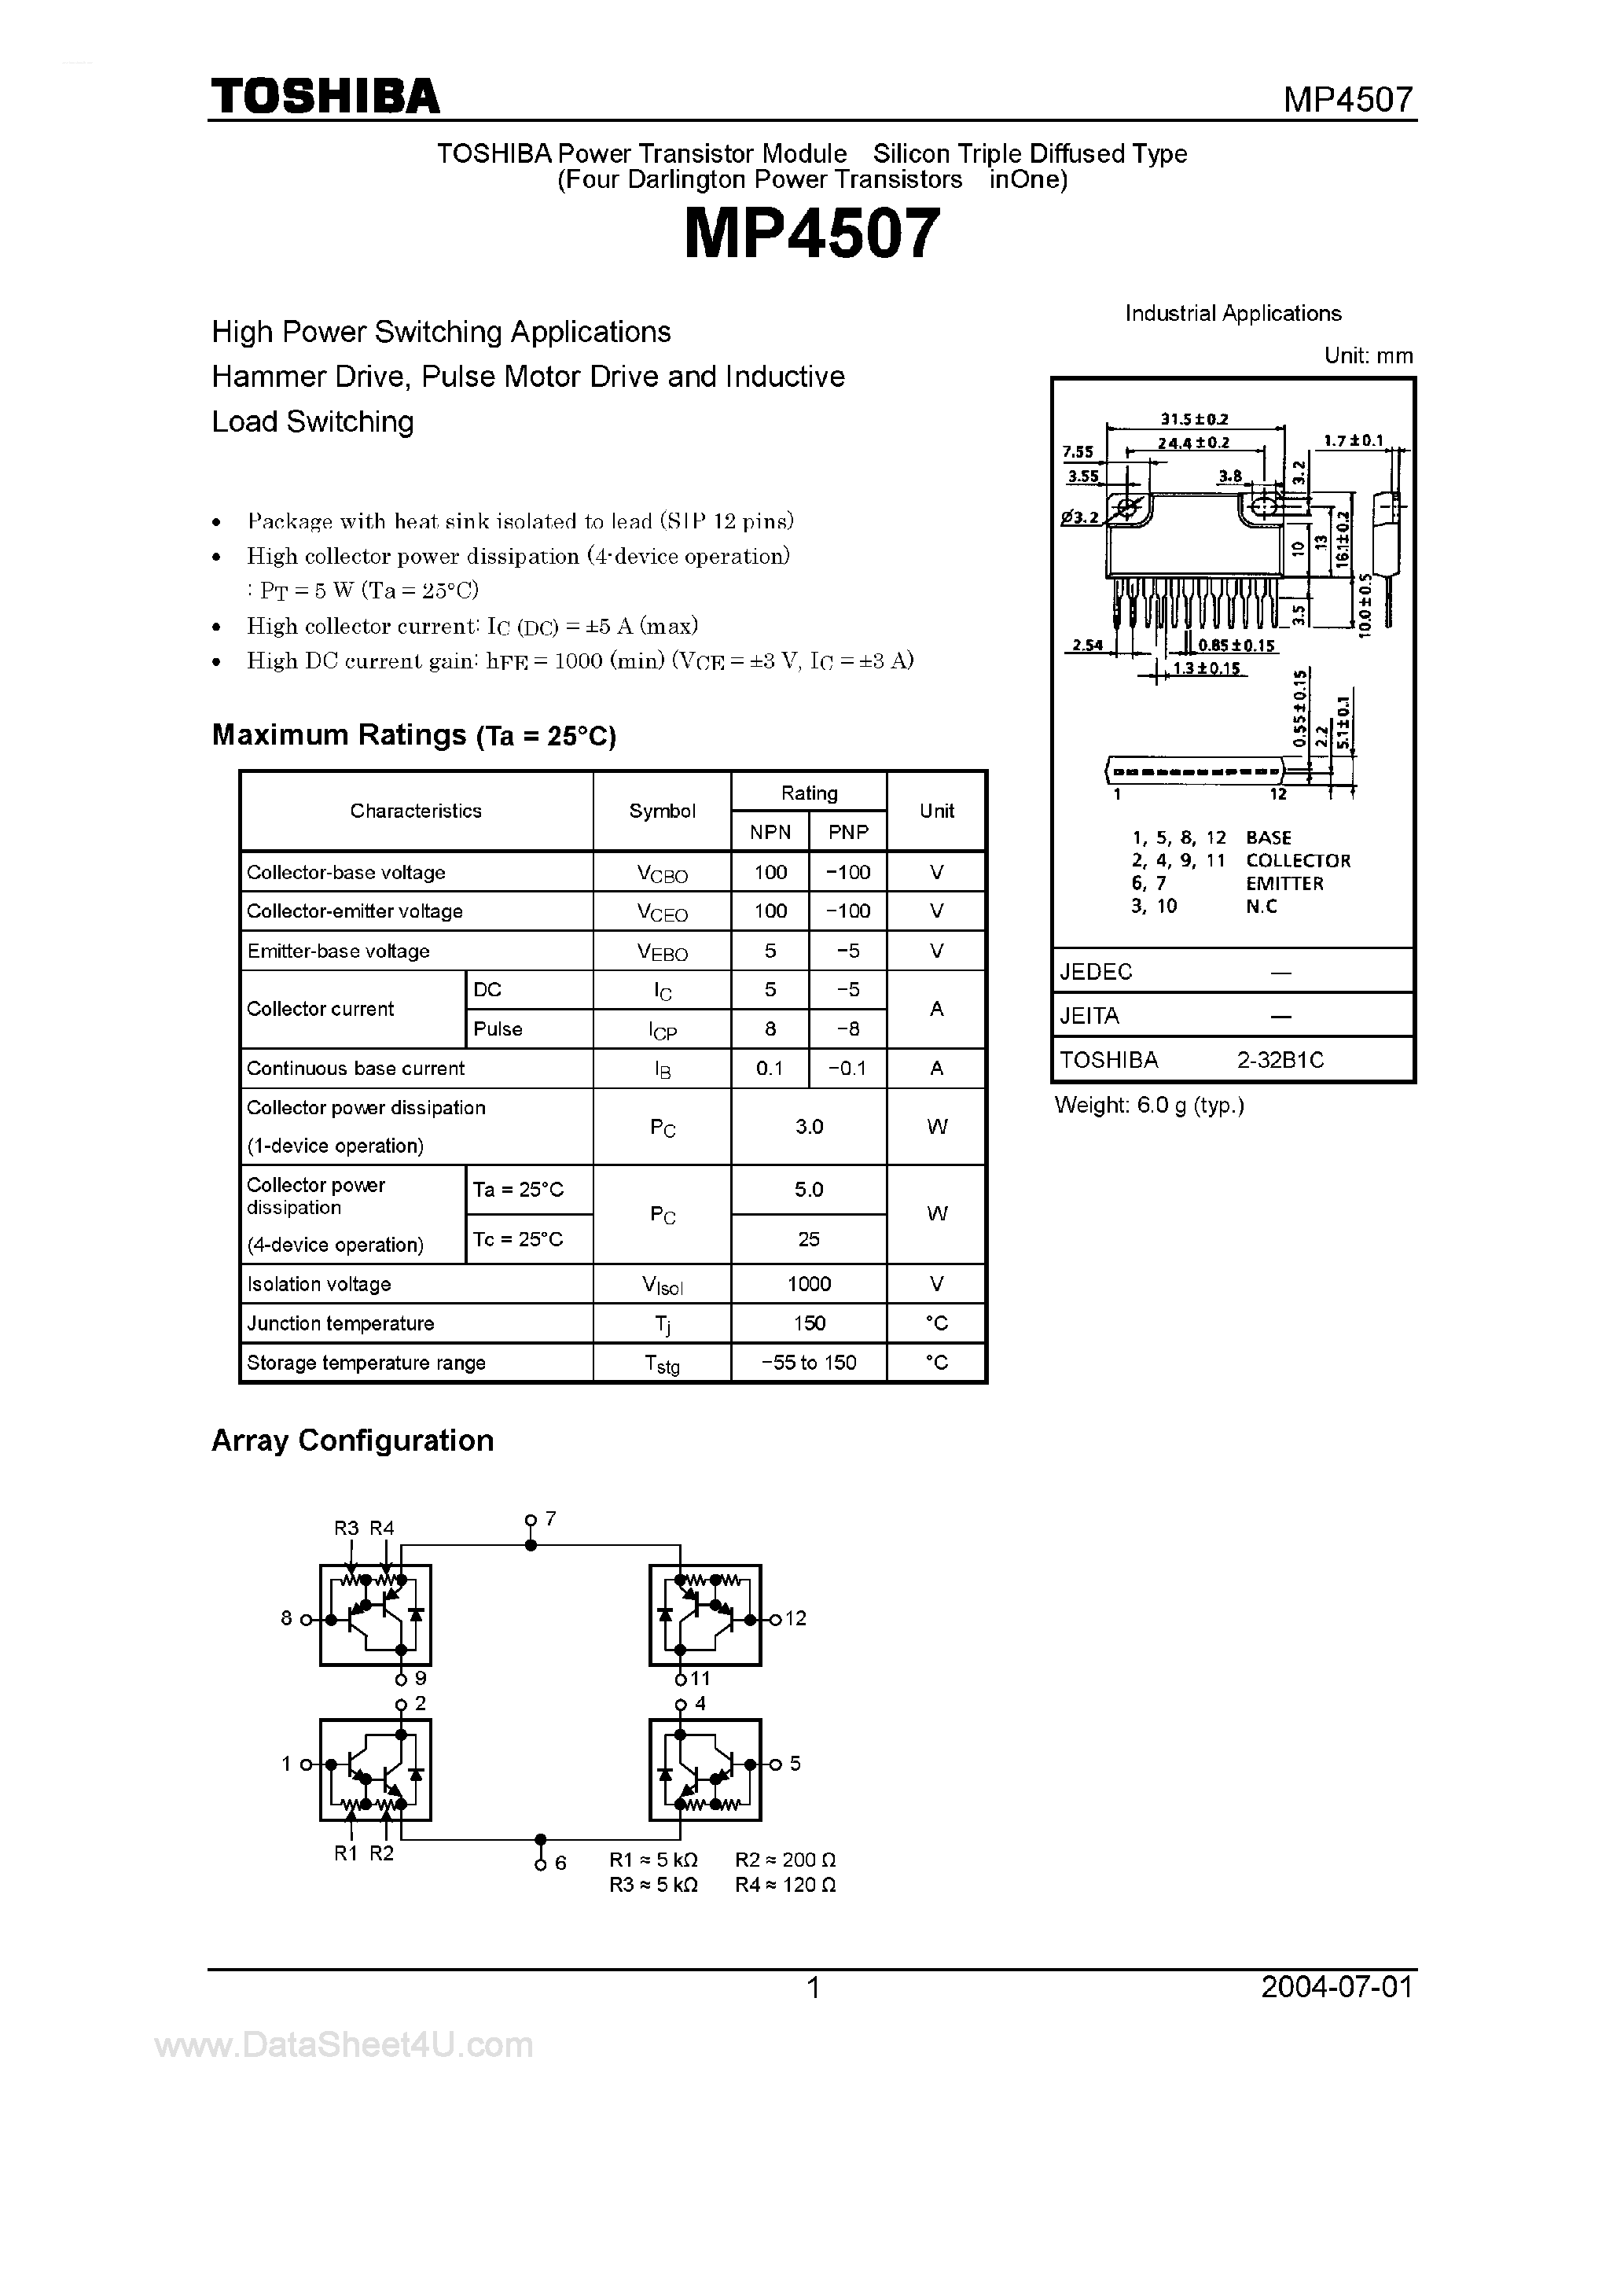 Datasheet MP4507 - Power Transistor Module page 1